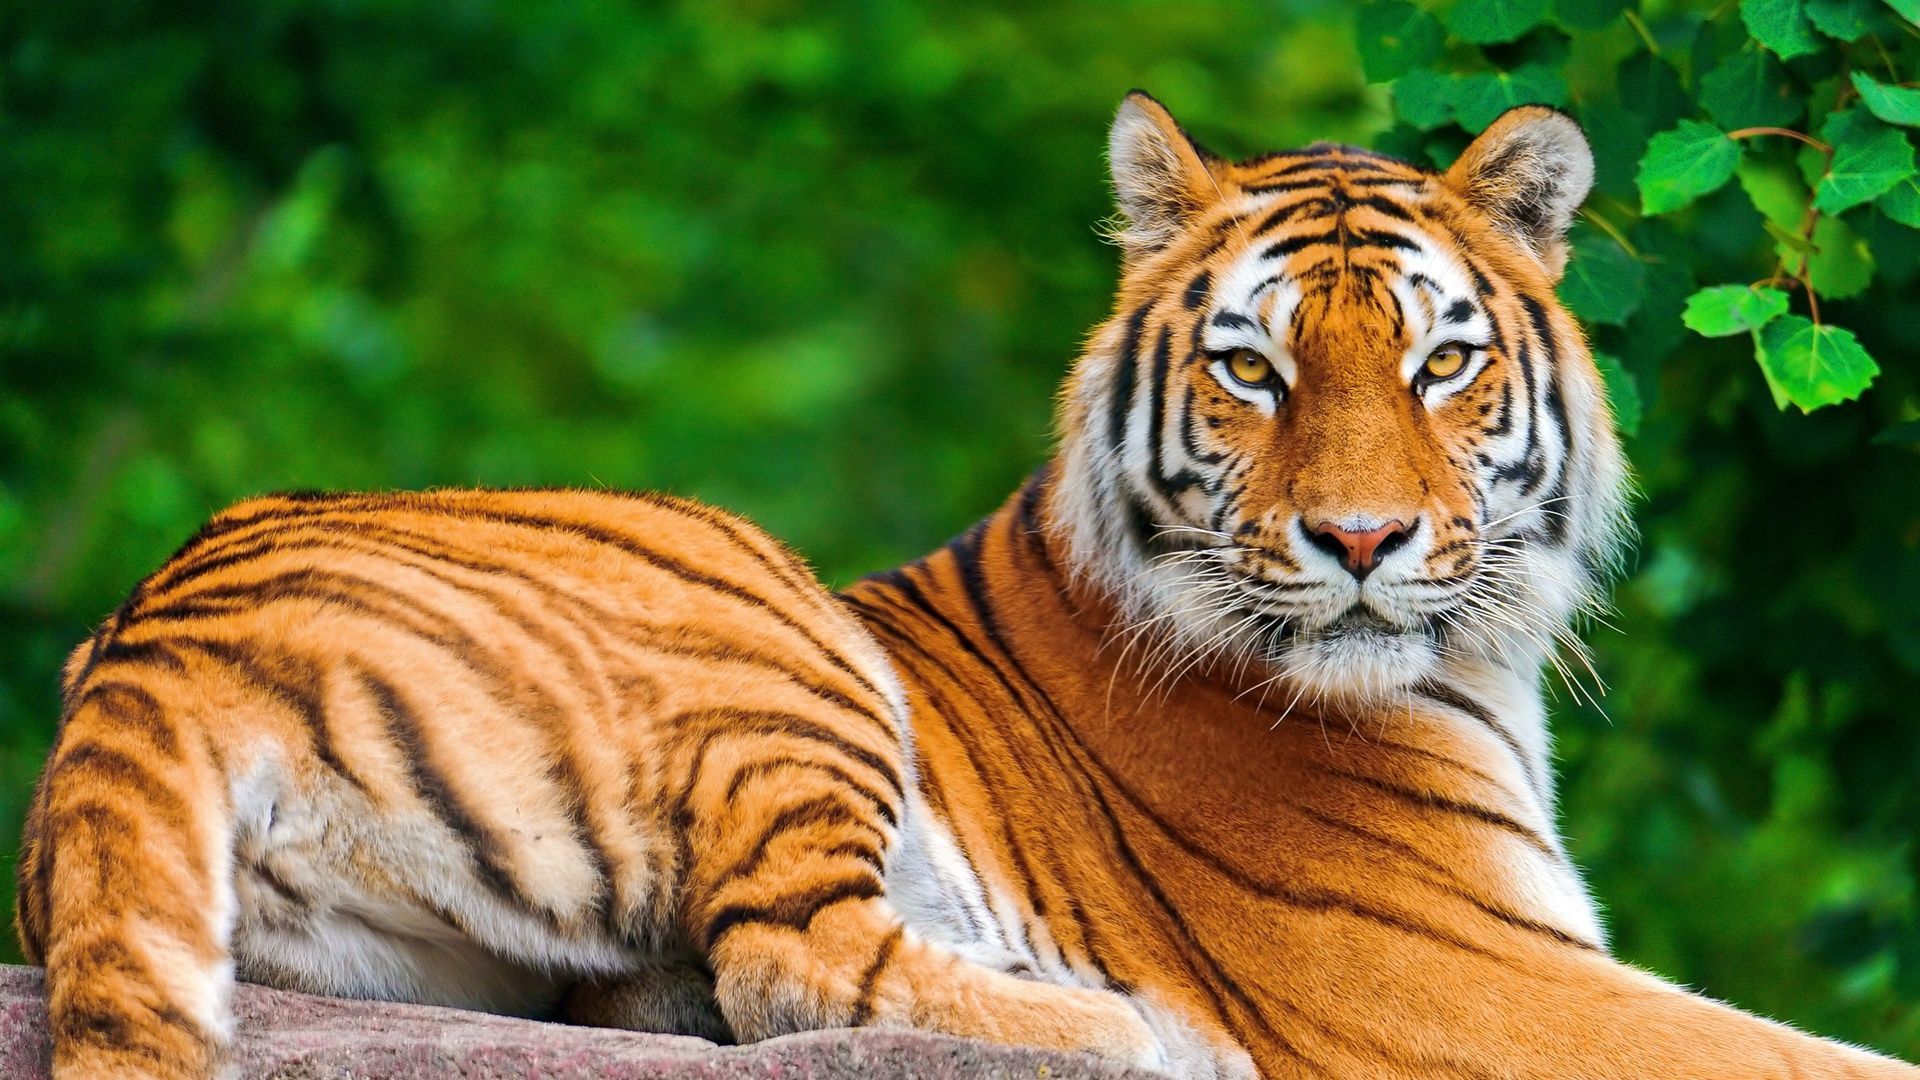 tiger-wallpaper-desktop.jpg